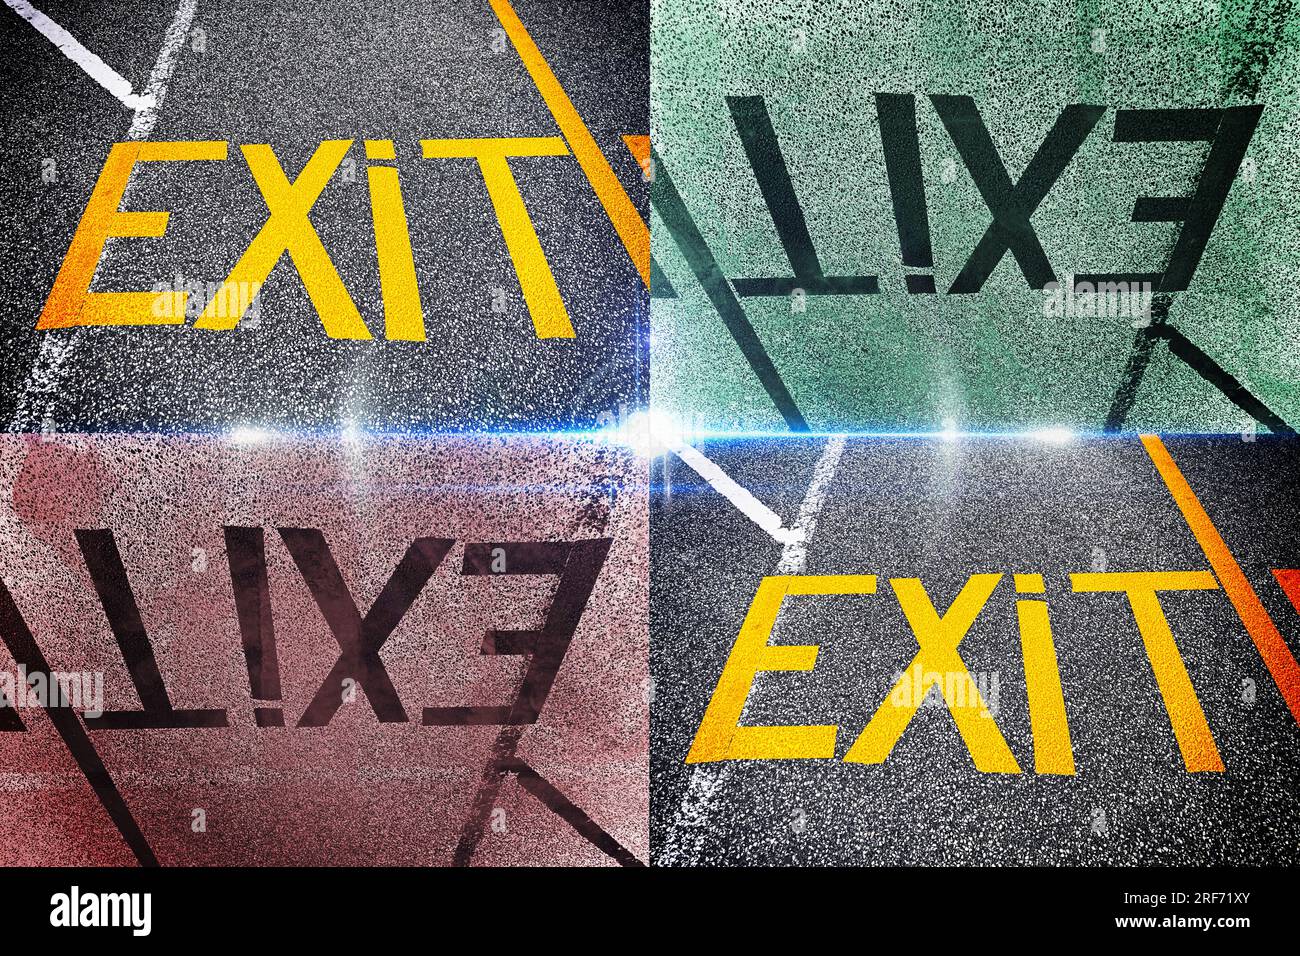 FOTOMONTAGE, Das Wort Exit ist auf dem Asphalt geschrieben Stock Photo